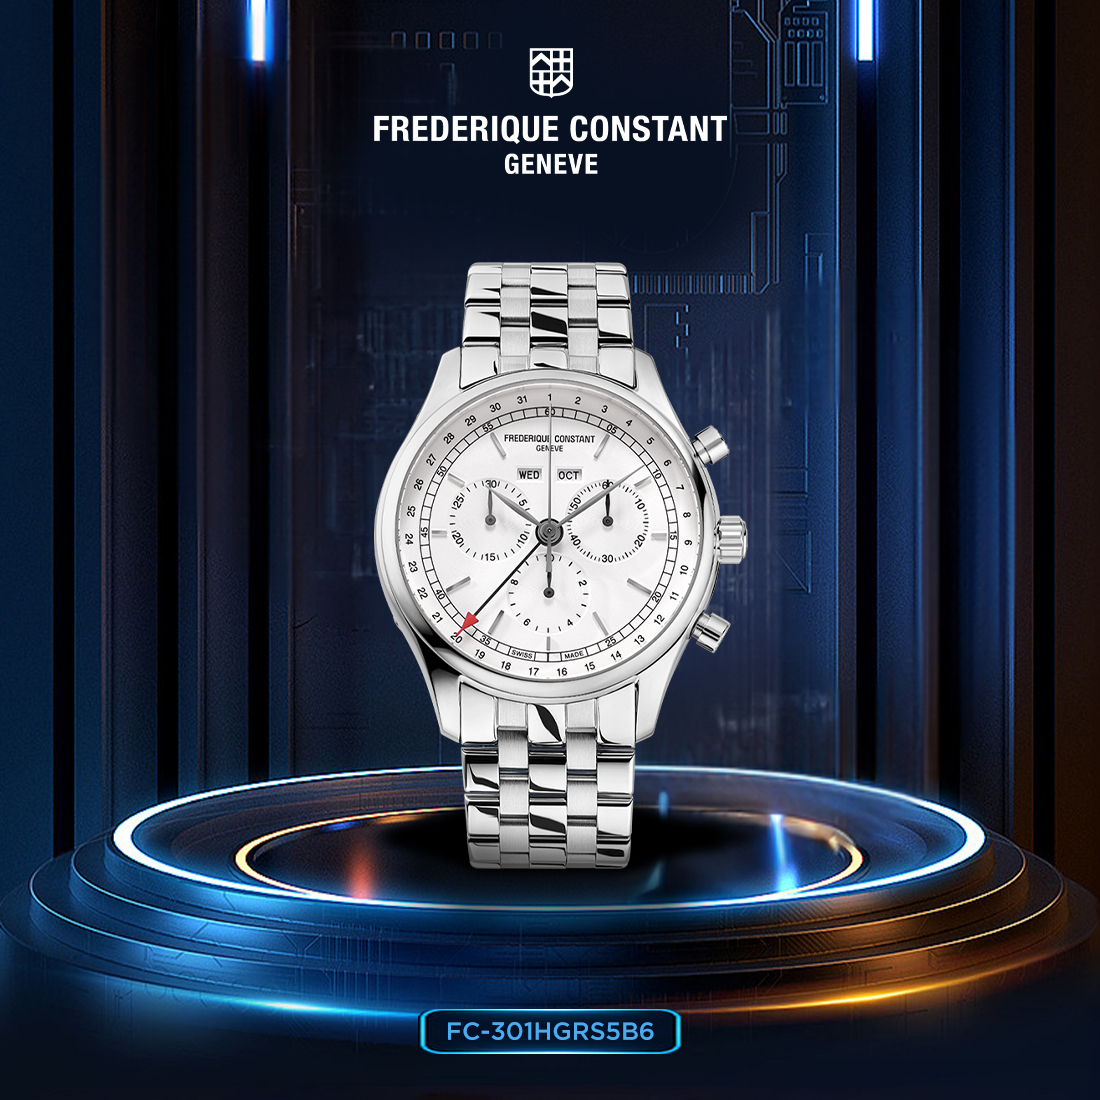 Những chiếc đồng hồ Frederique Constant luôn tự hào về độ bền bởi sử dụng những nguyên vật liệu cao cấp